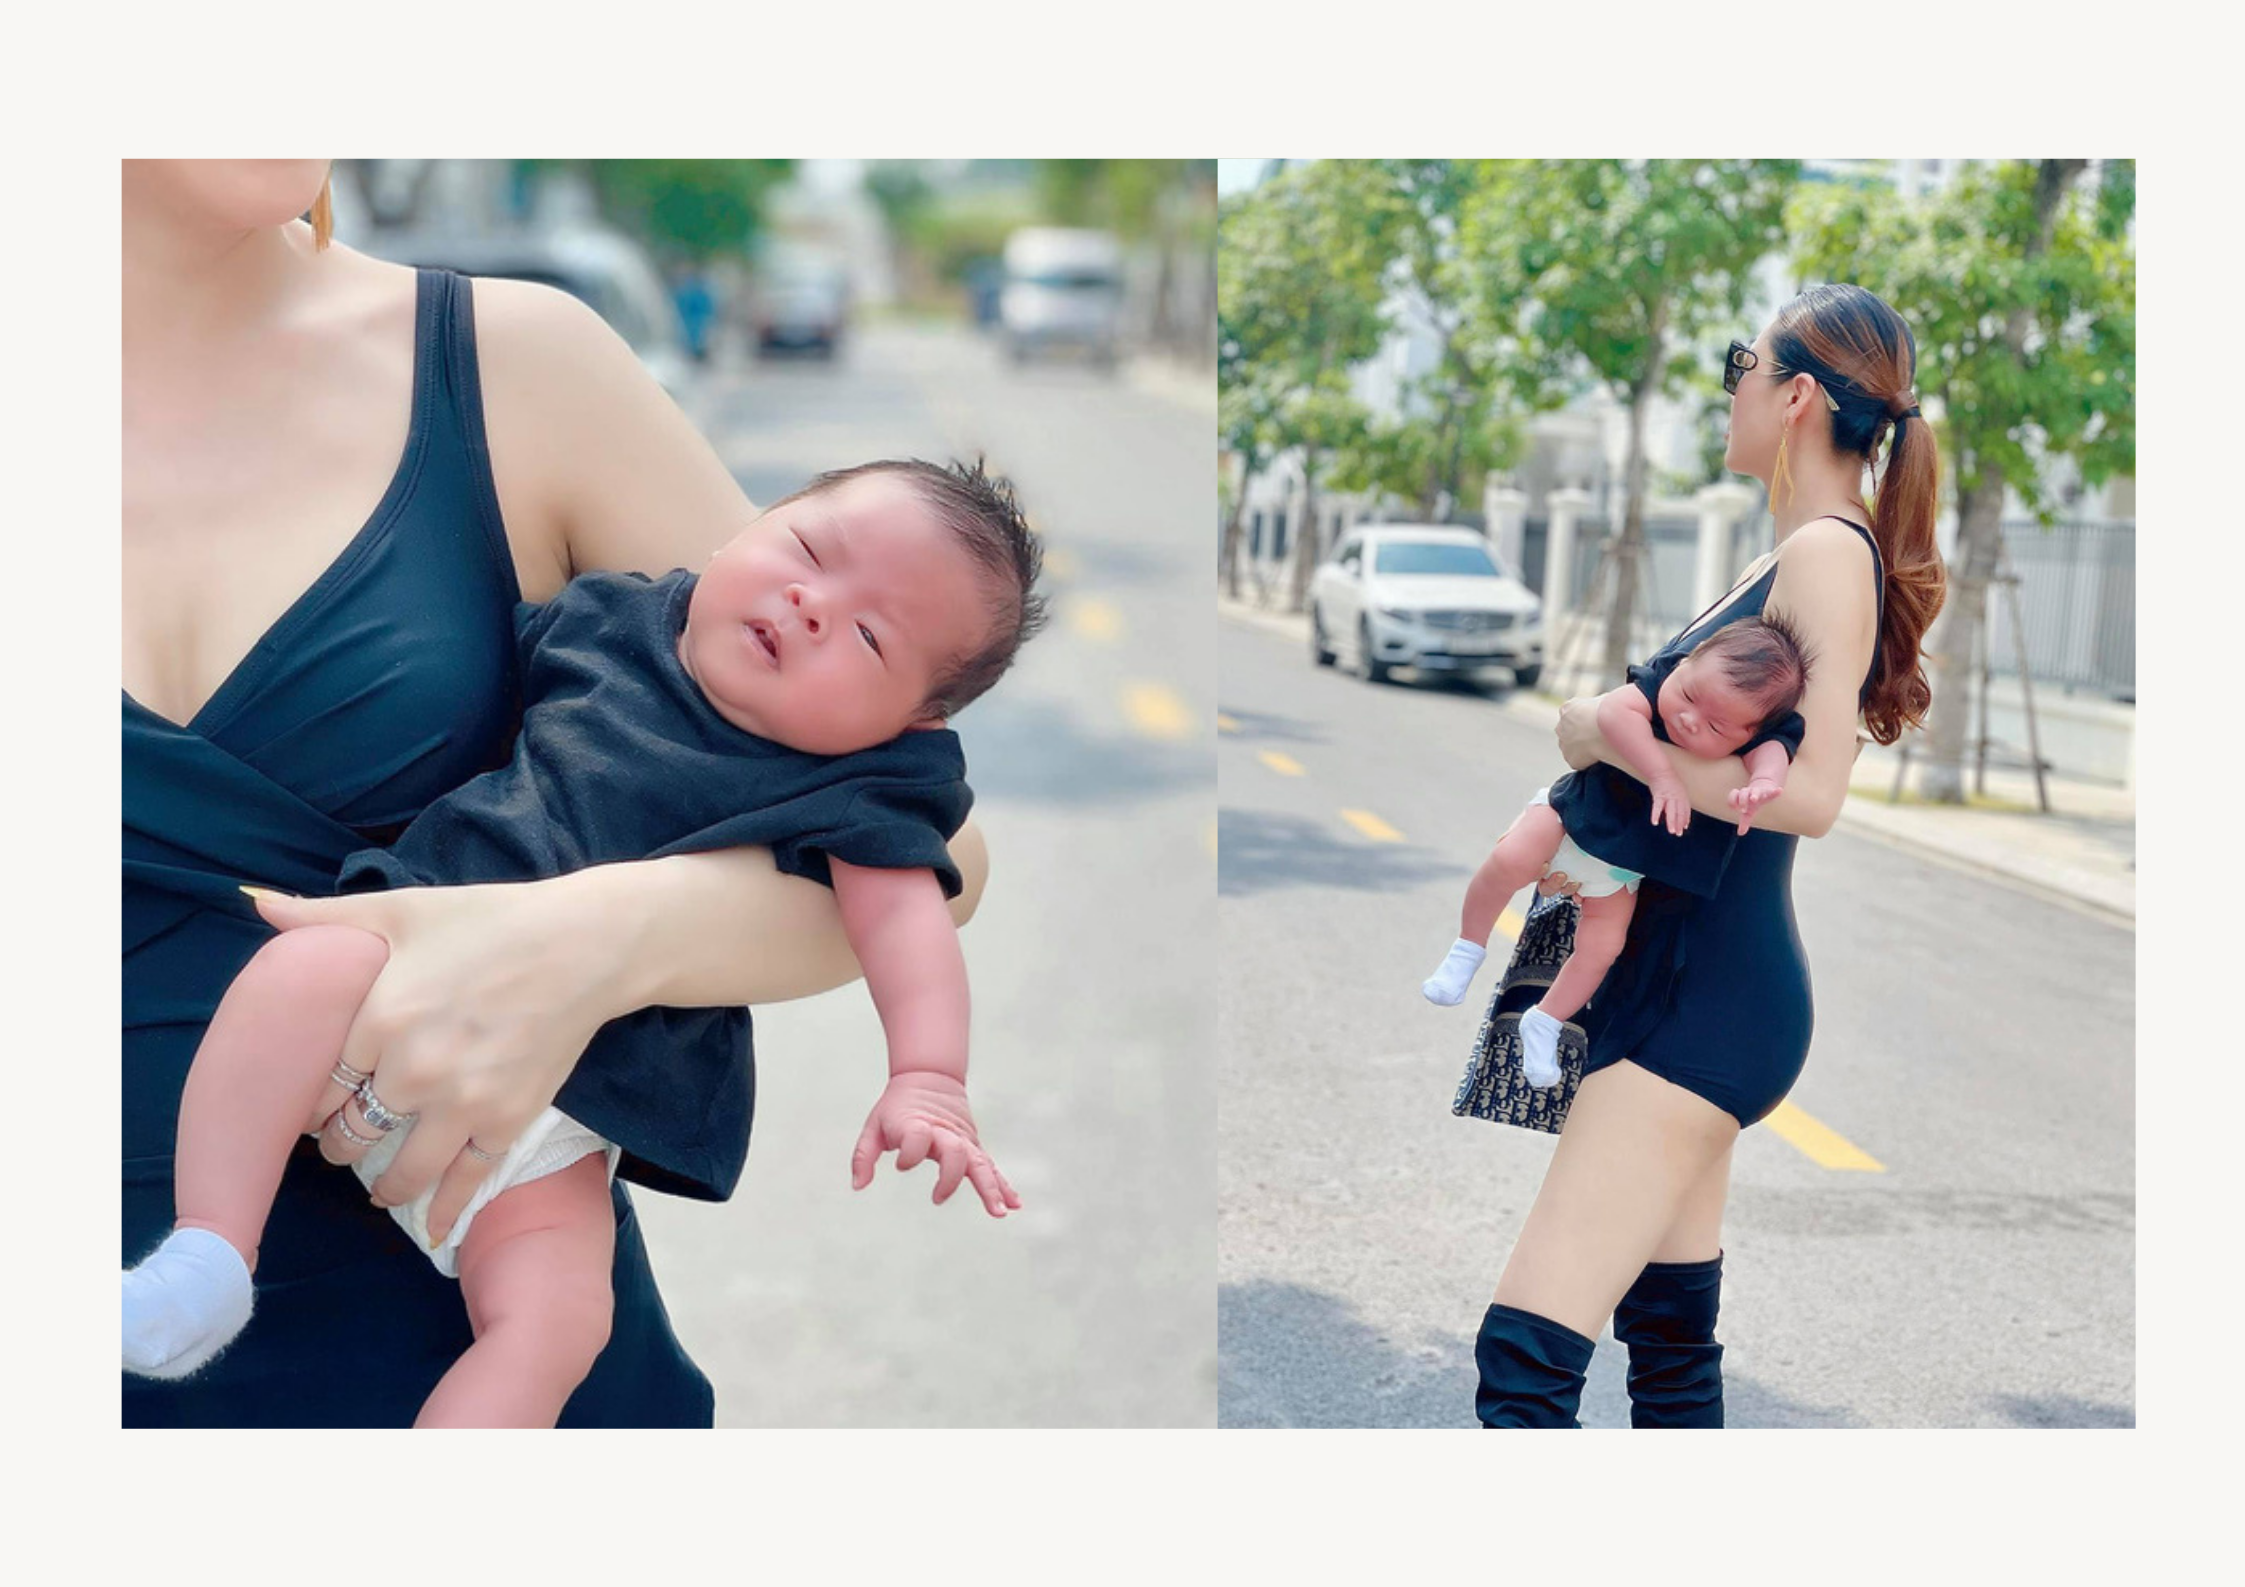 Quế Vân đăng ảnh cùng con 1 tháng tuổi dạo phố nhưng bị chỉ trích dữ dội, cầm túi xách còn cẩn thận hơn bế con